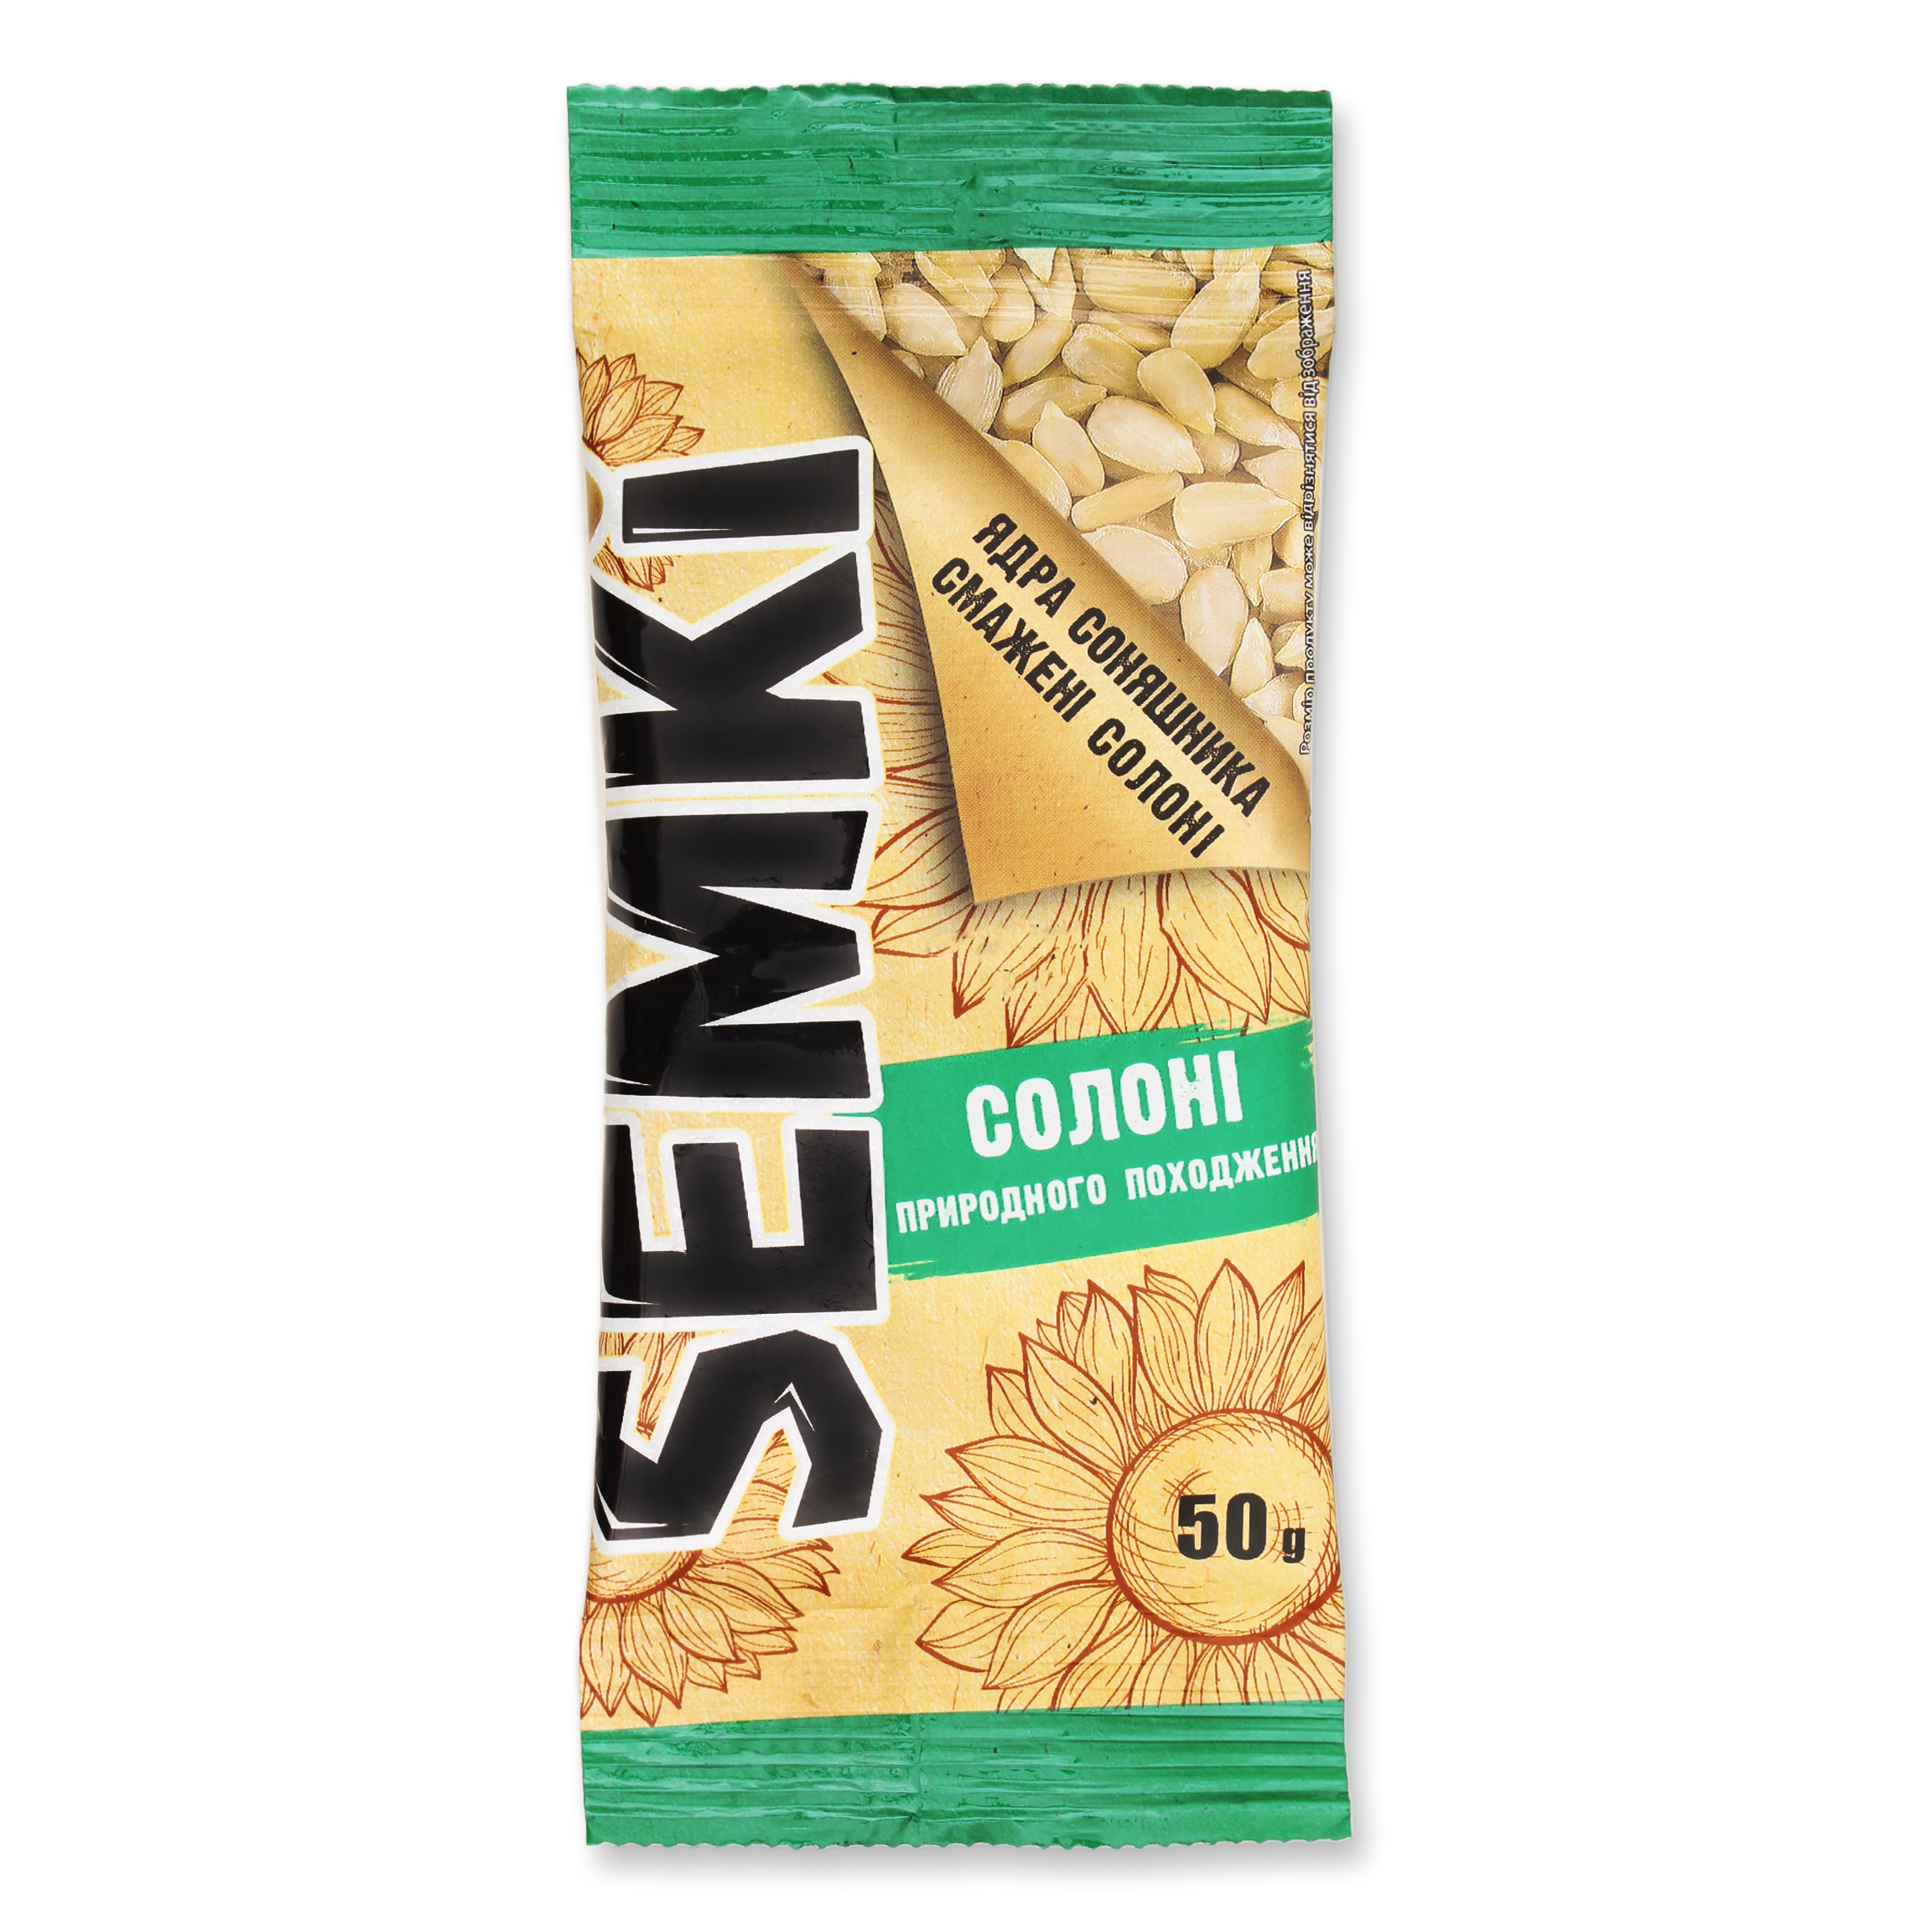 Semki salt cleaned sunflower seeds 50g
